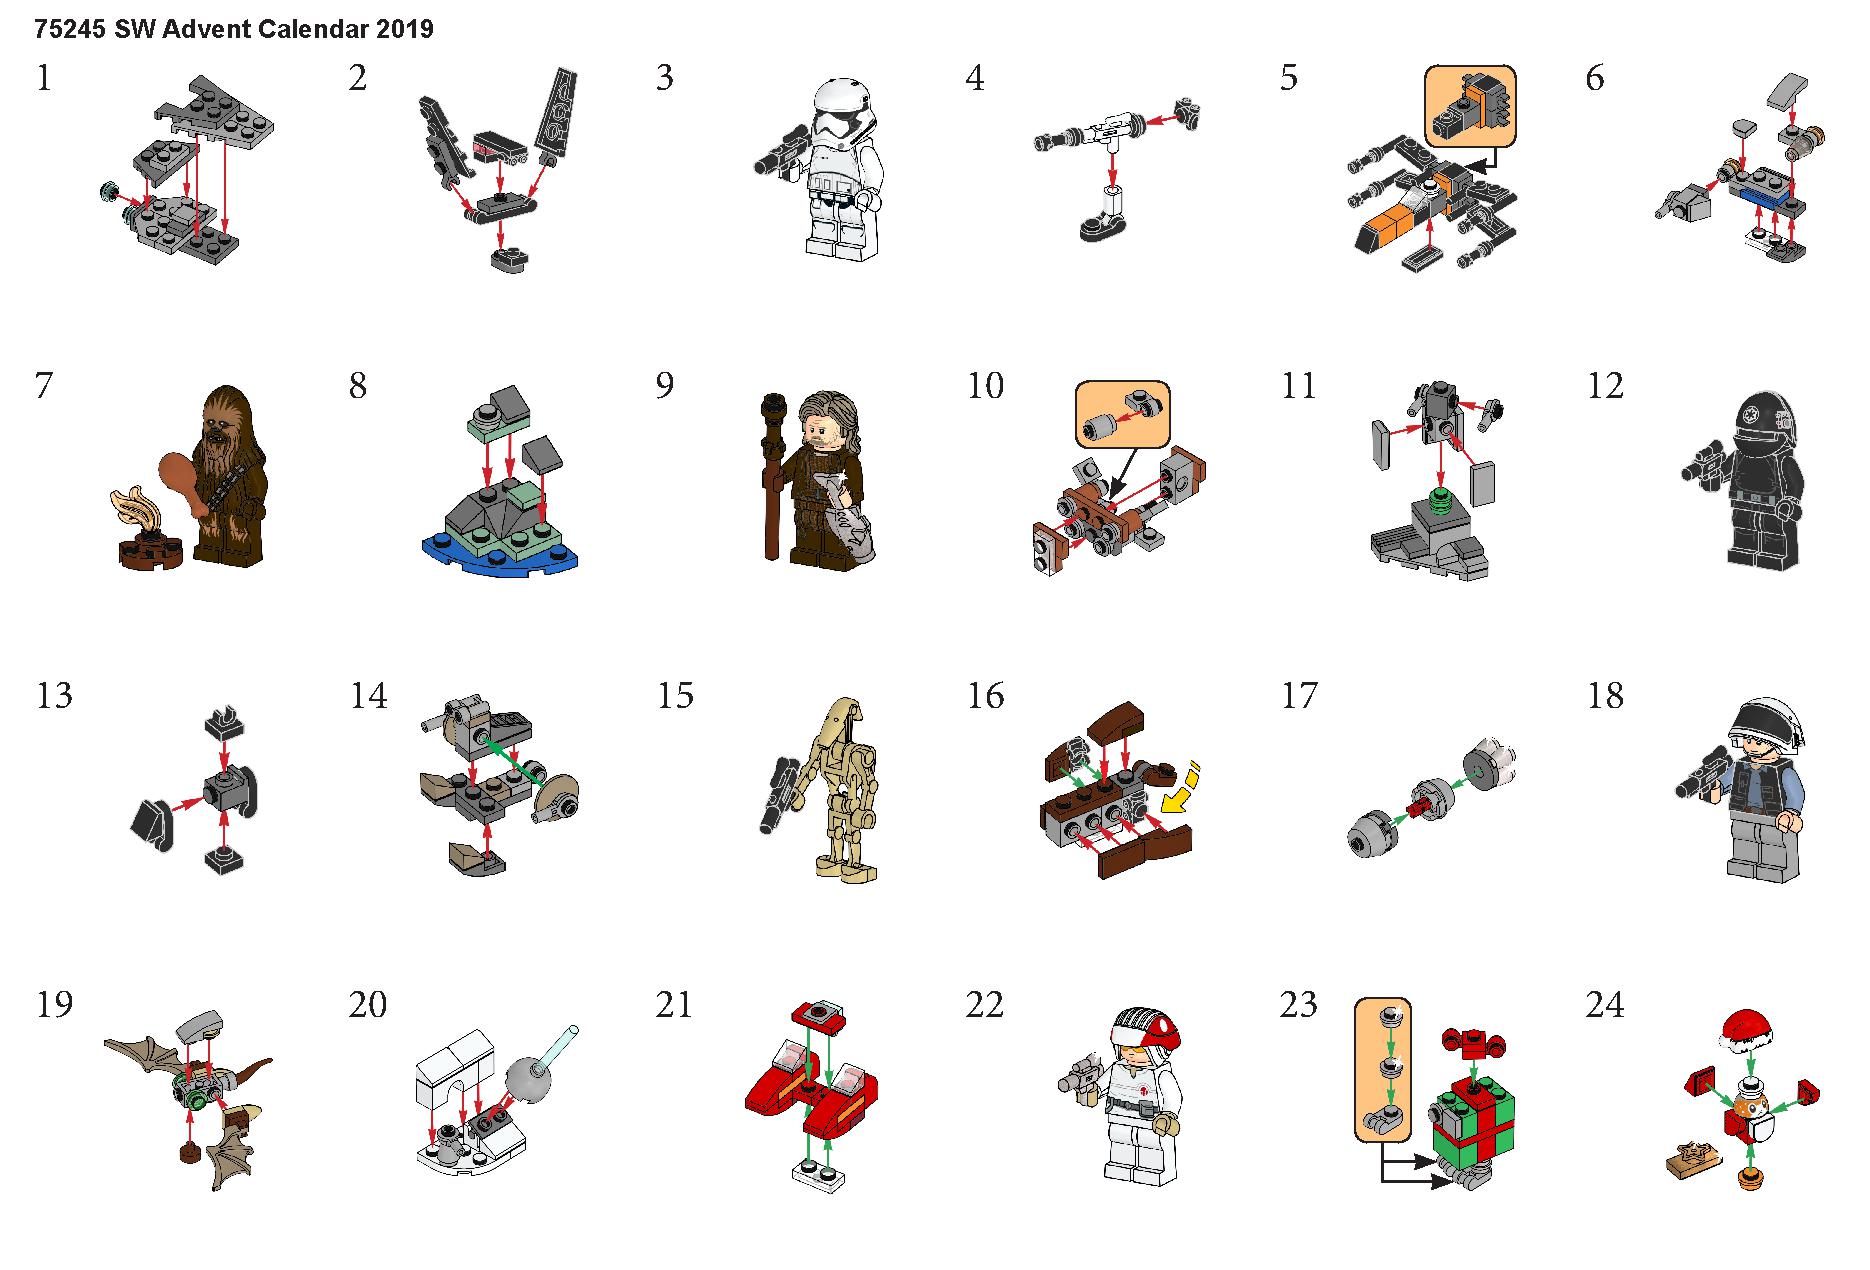 レゴ スター・ウォーズ ™アドベント カレンダー 75245 レゴの商品情報 レゴの説明書・組立方法 1 page